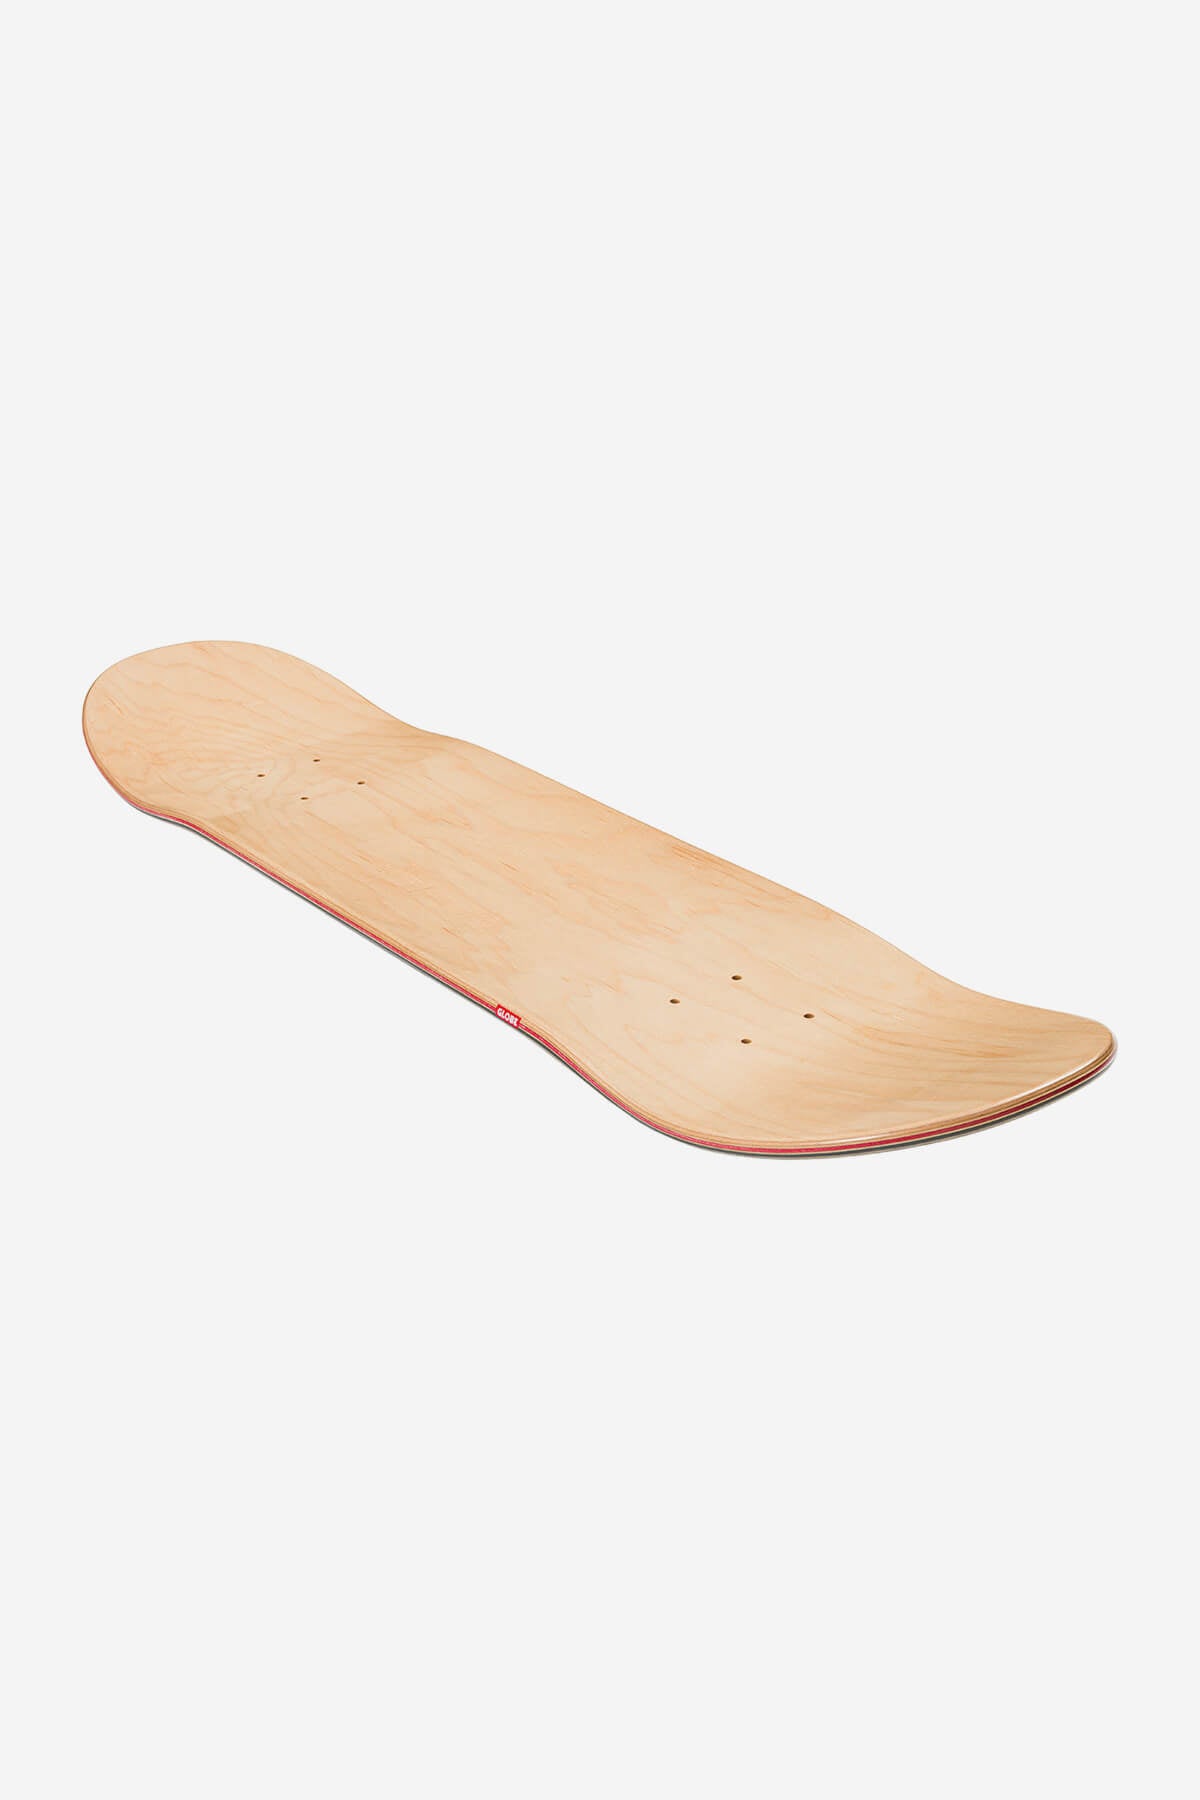 Globe Decks G3 Bar Skateboard Deck 8.0" in Impact/Black Dye